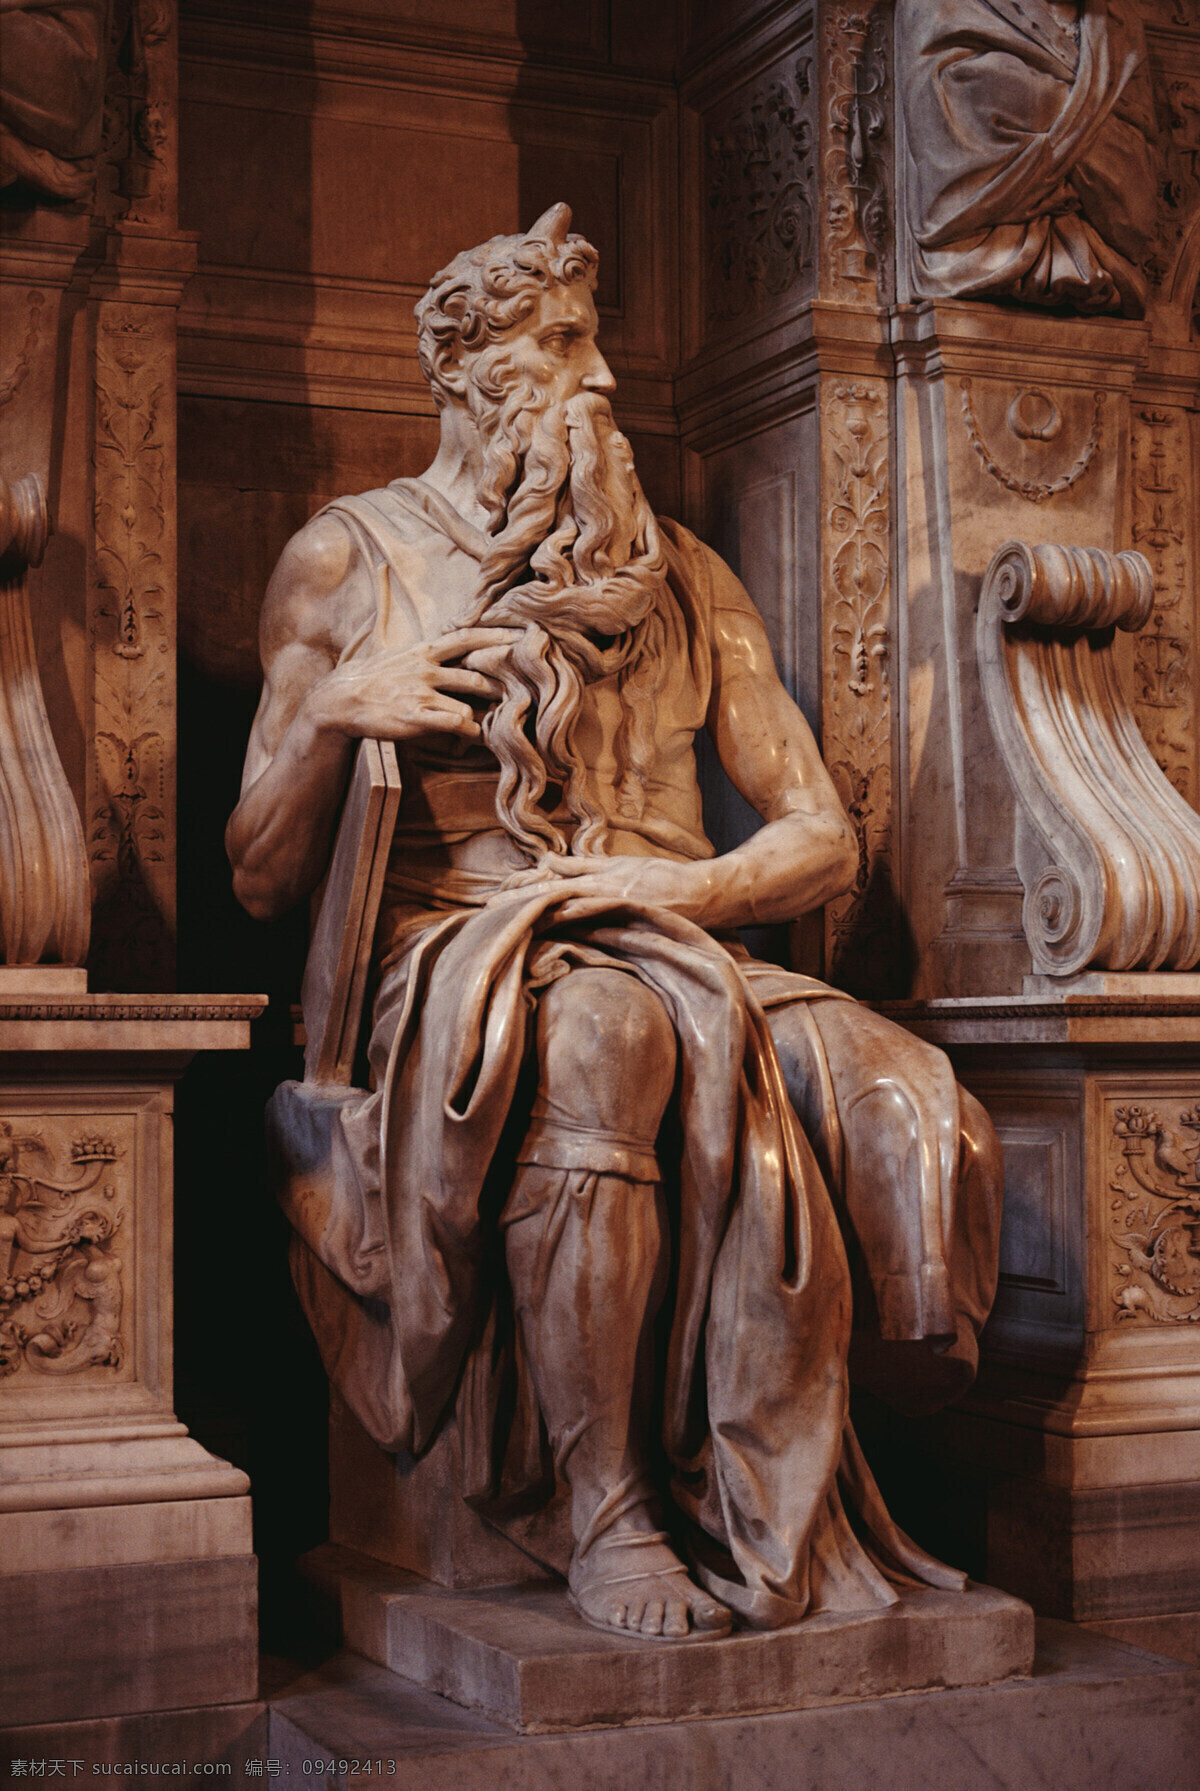 米开朗基罗 作品 摩西 坐像 雕塑 大理石雕像 现 位于 罗马 梵蒂冈 圣彼得大教堂 犹太人 中 最高 领袖 建筑园林 摄影图库 300